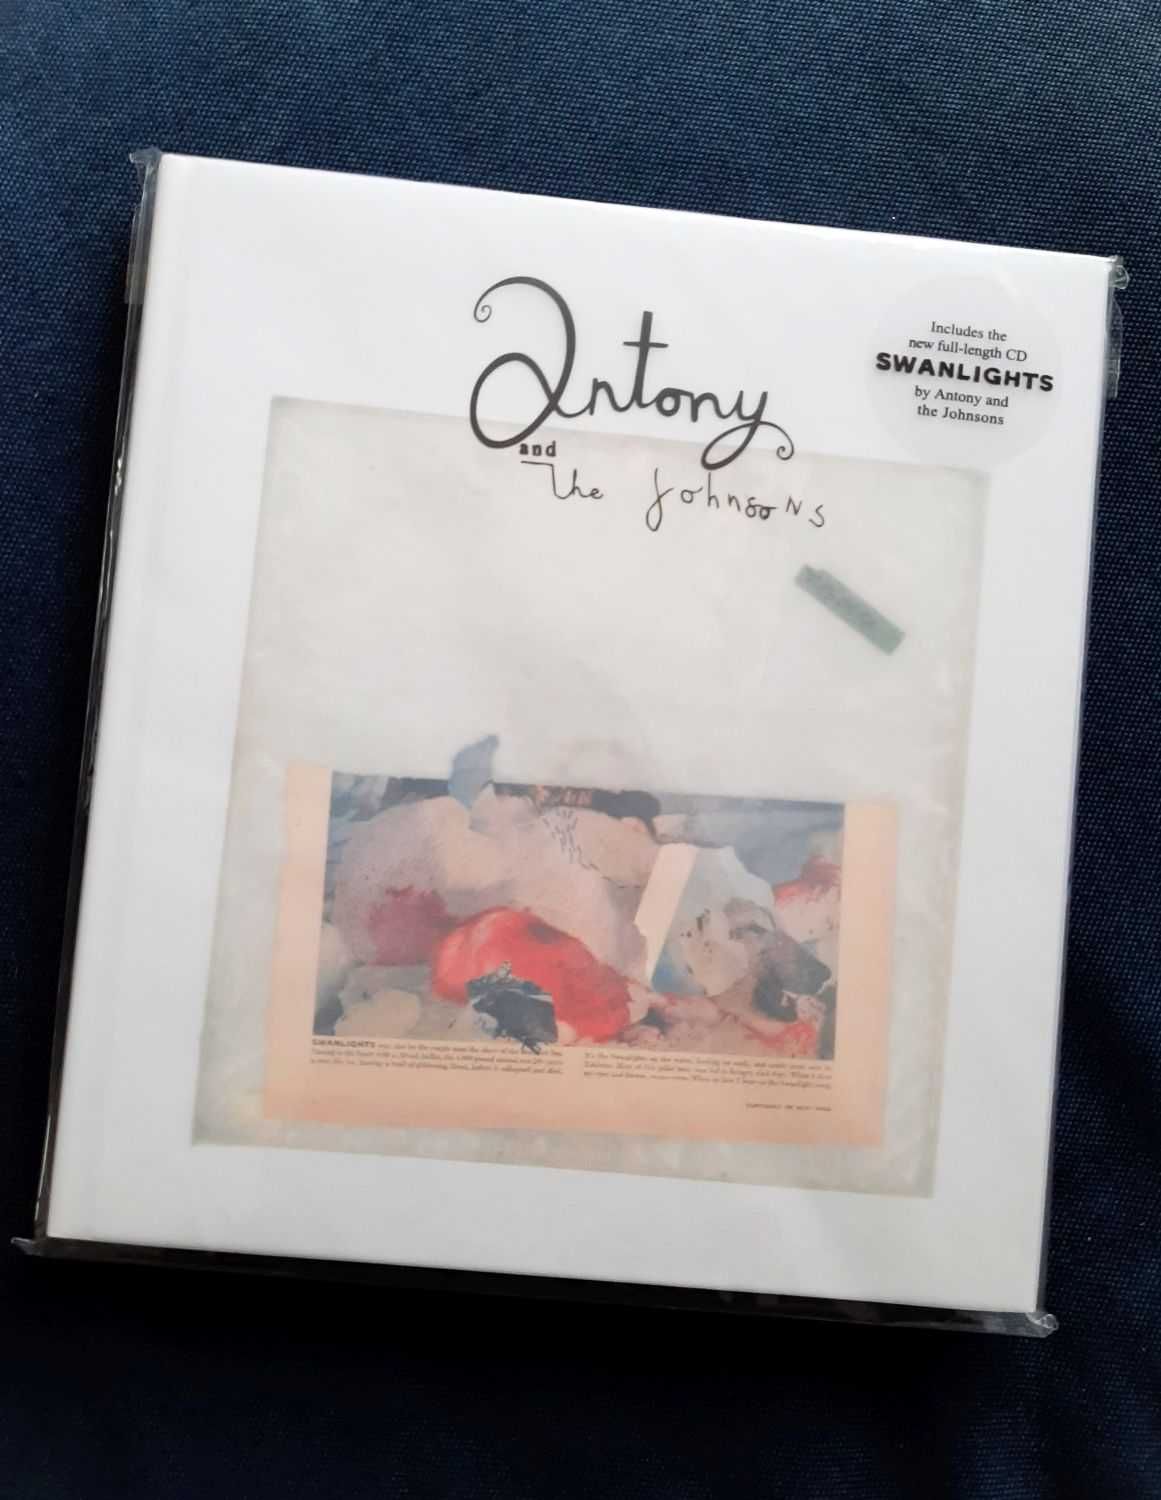 Livro e CD de Antony and The Johnsons, "Swanlights"